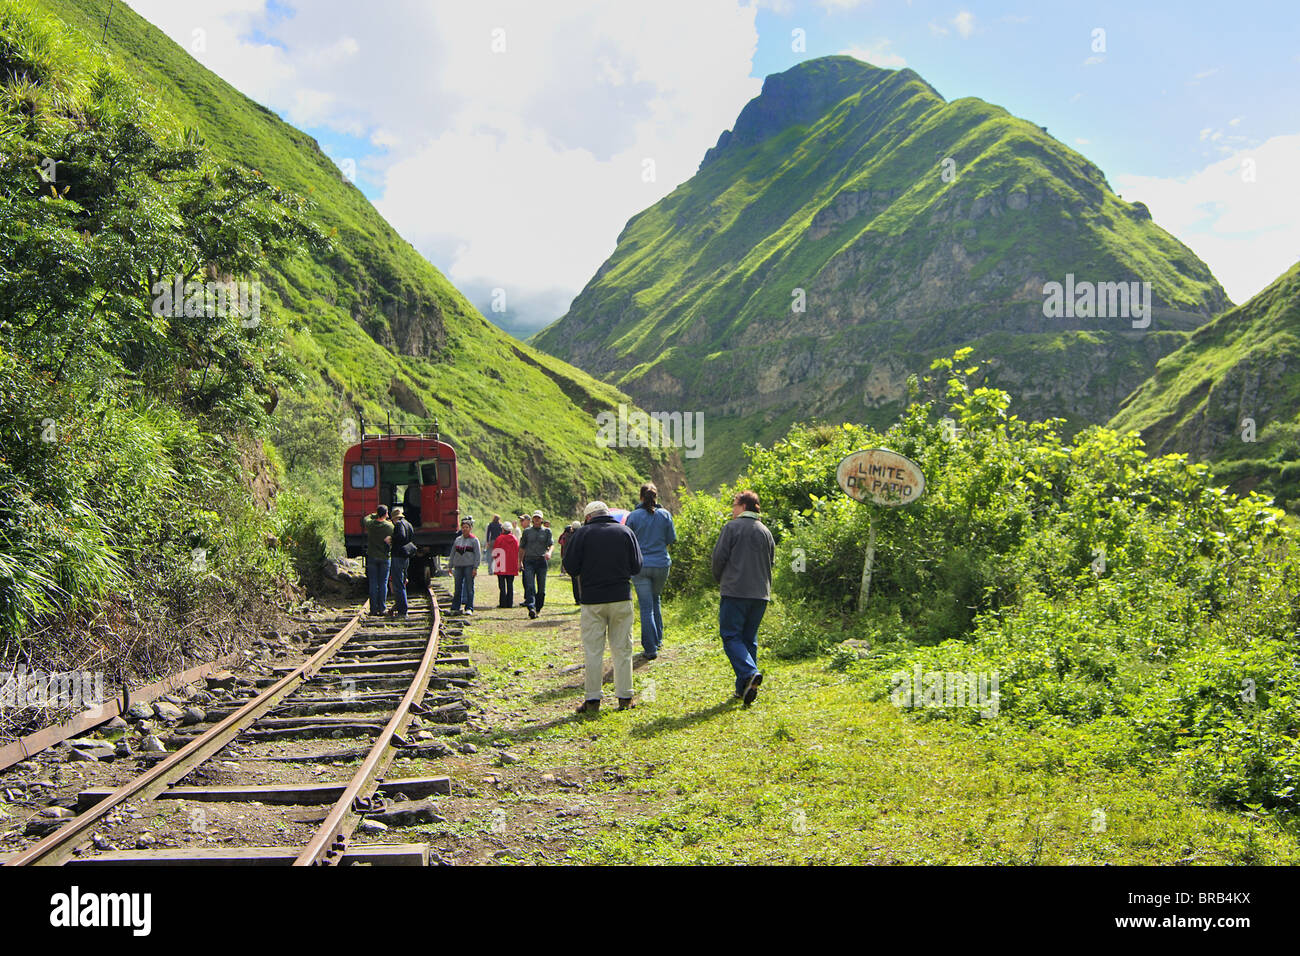 Scenery on Devils Nose rail journey, Alausi to Sibambe, Ecuador Stock Photo